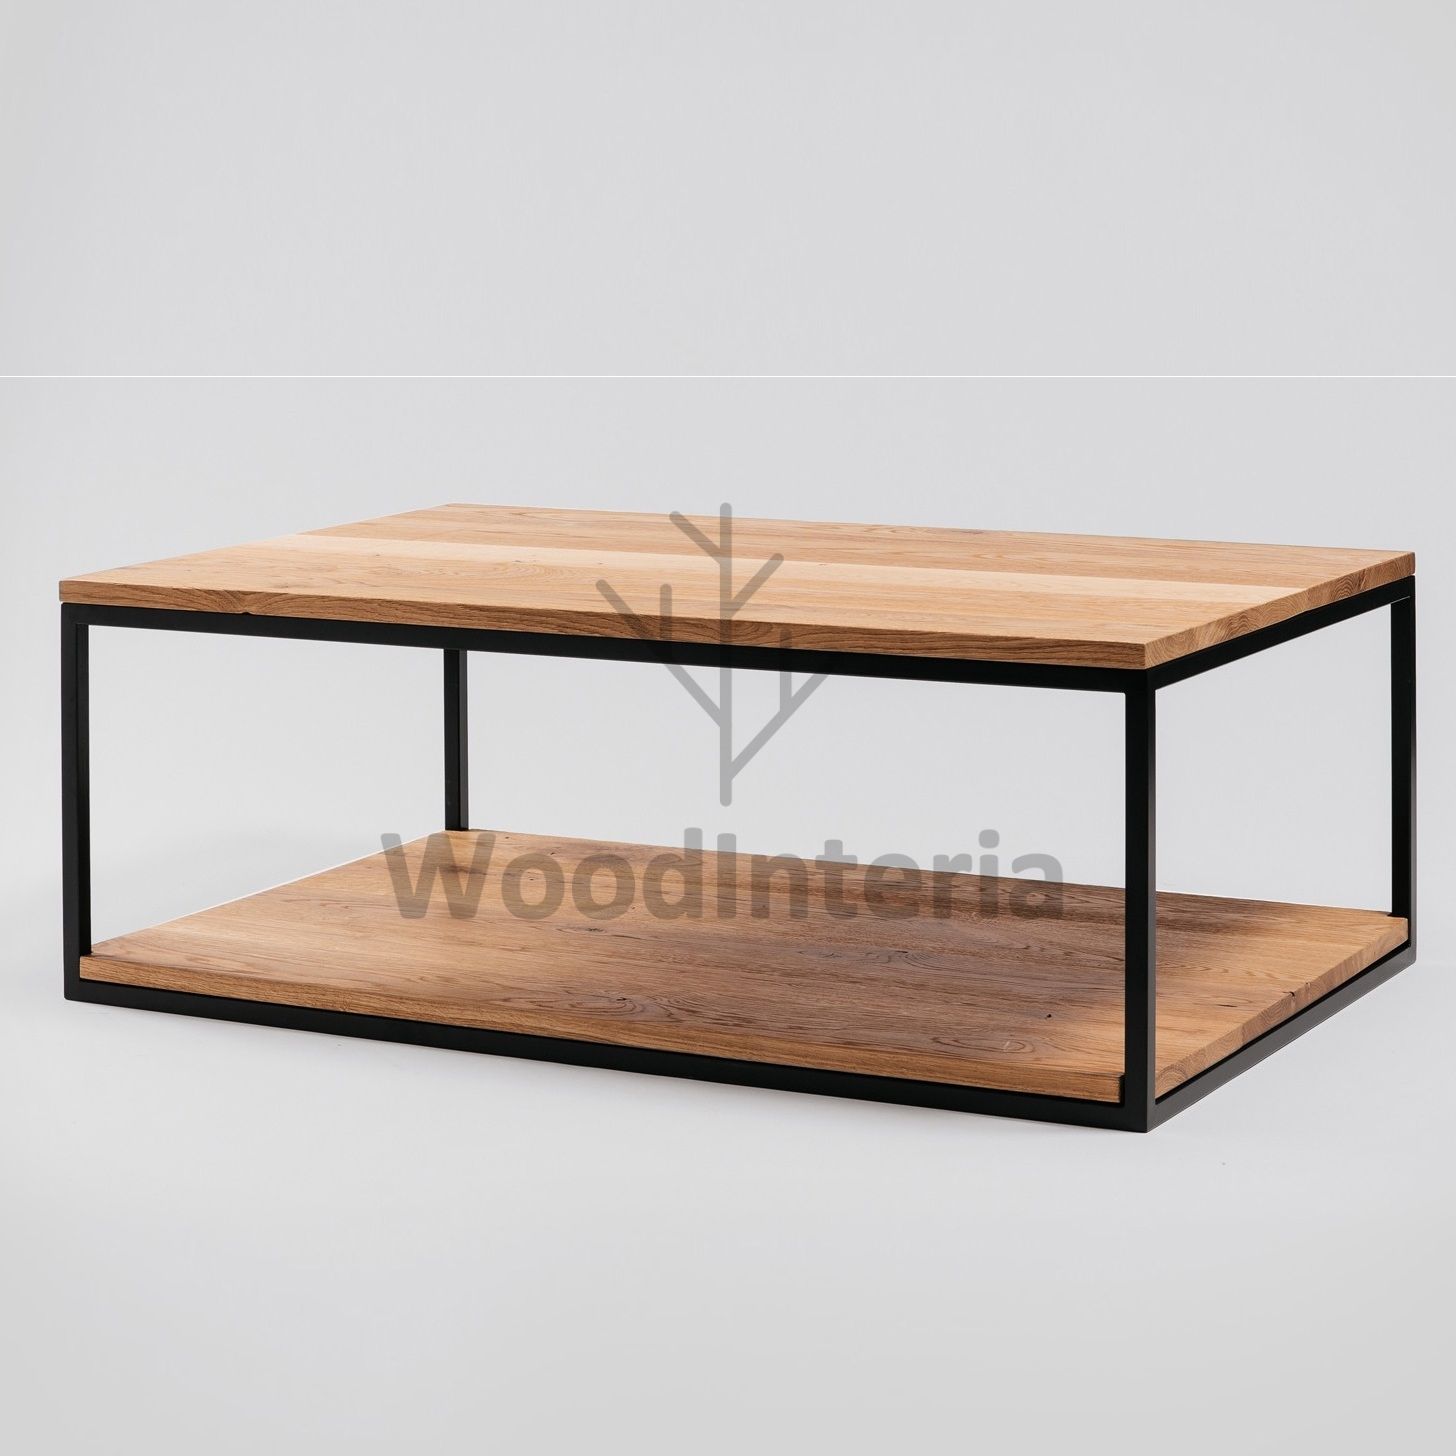 фото журнальный стол двухуровневый oak natur в интерьере лофт эко | WoodInteria